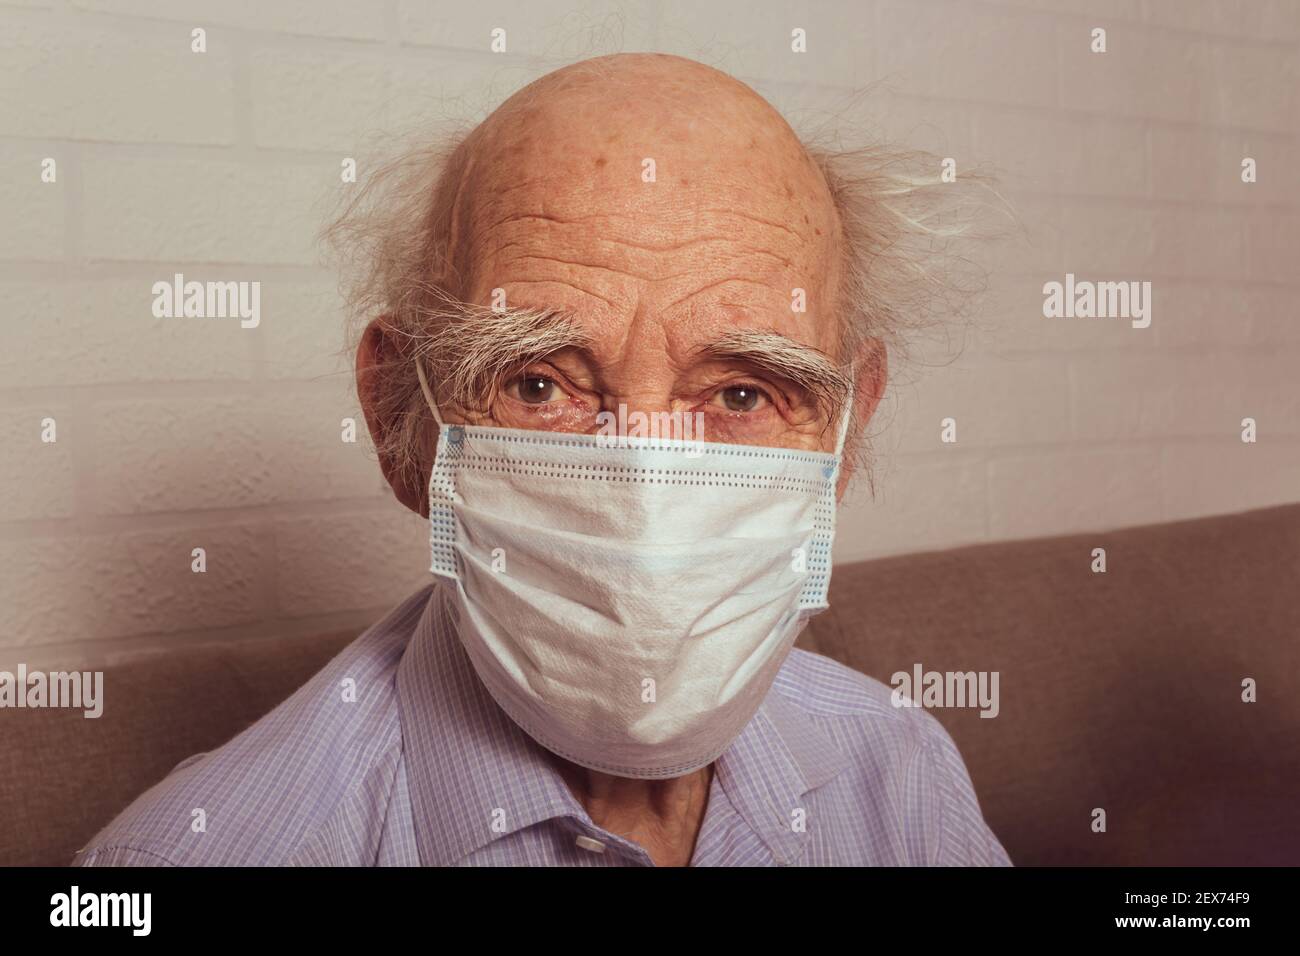 Vieil homme dans un masque médical de protection. Portrait. Grand-père caucasien dans le masque médical bleu. Concept de protection contre la grippe et les virus. Banque D'Images